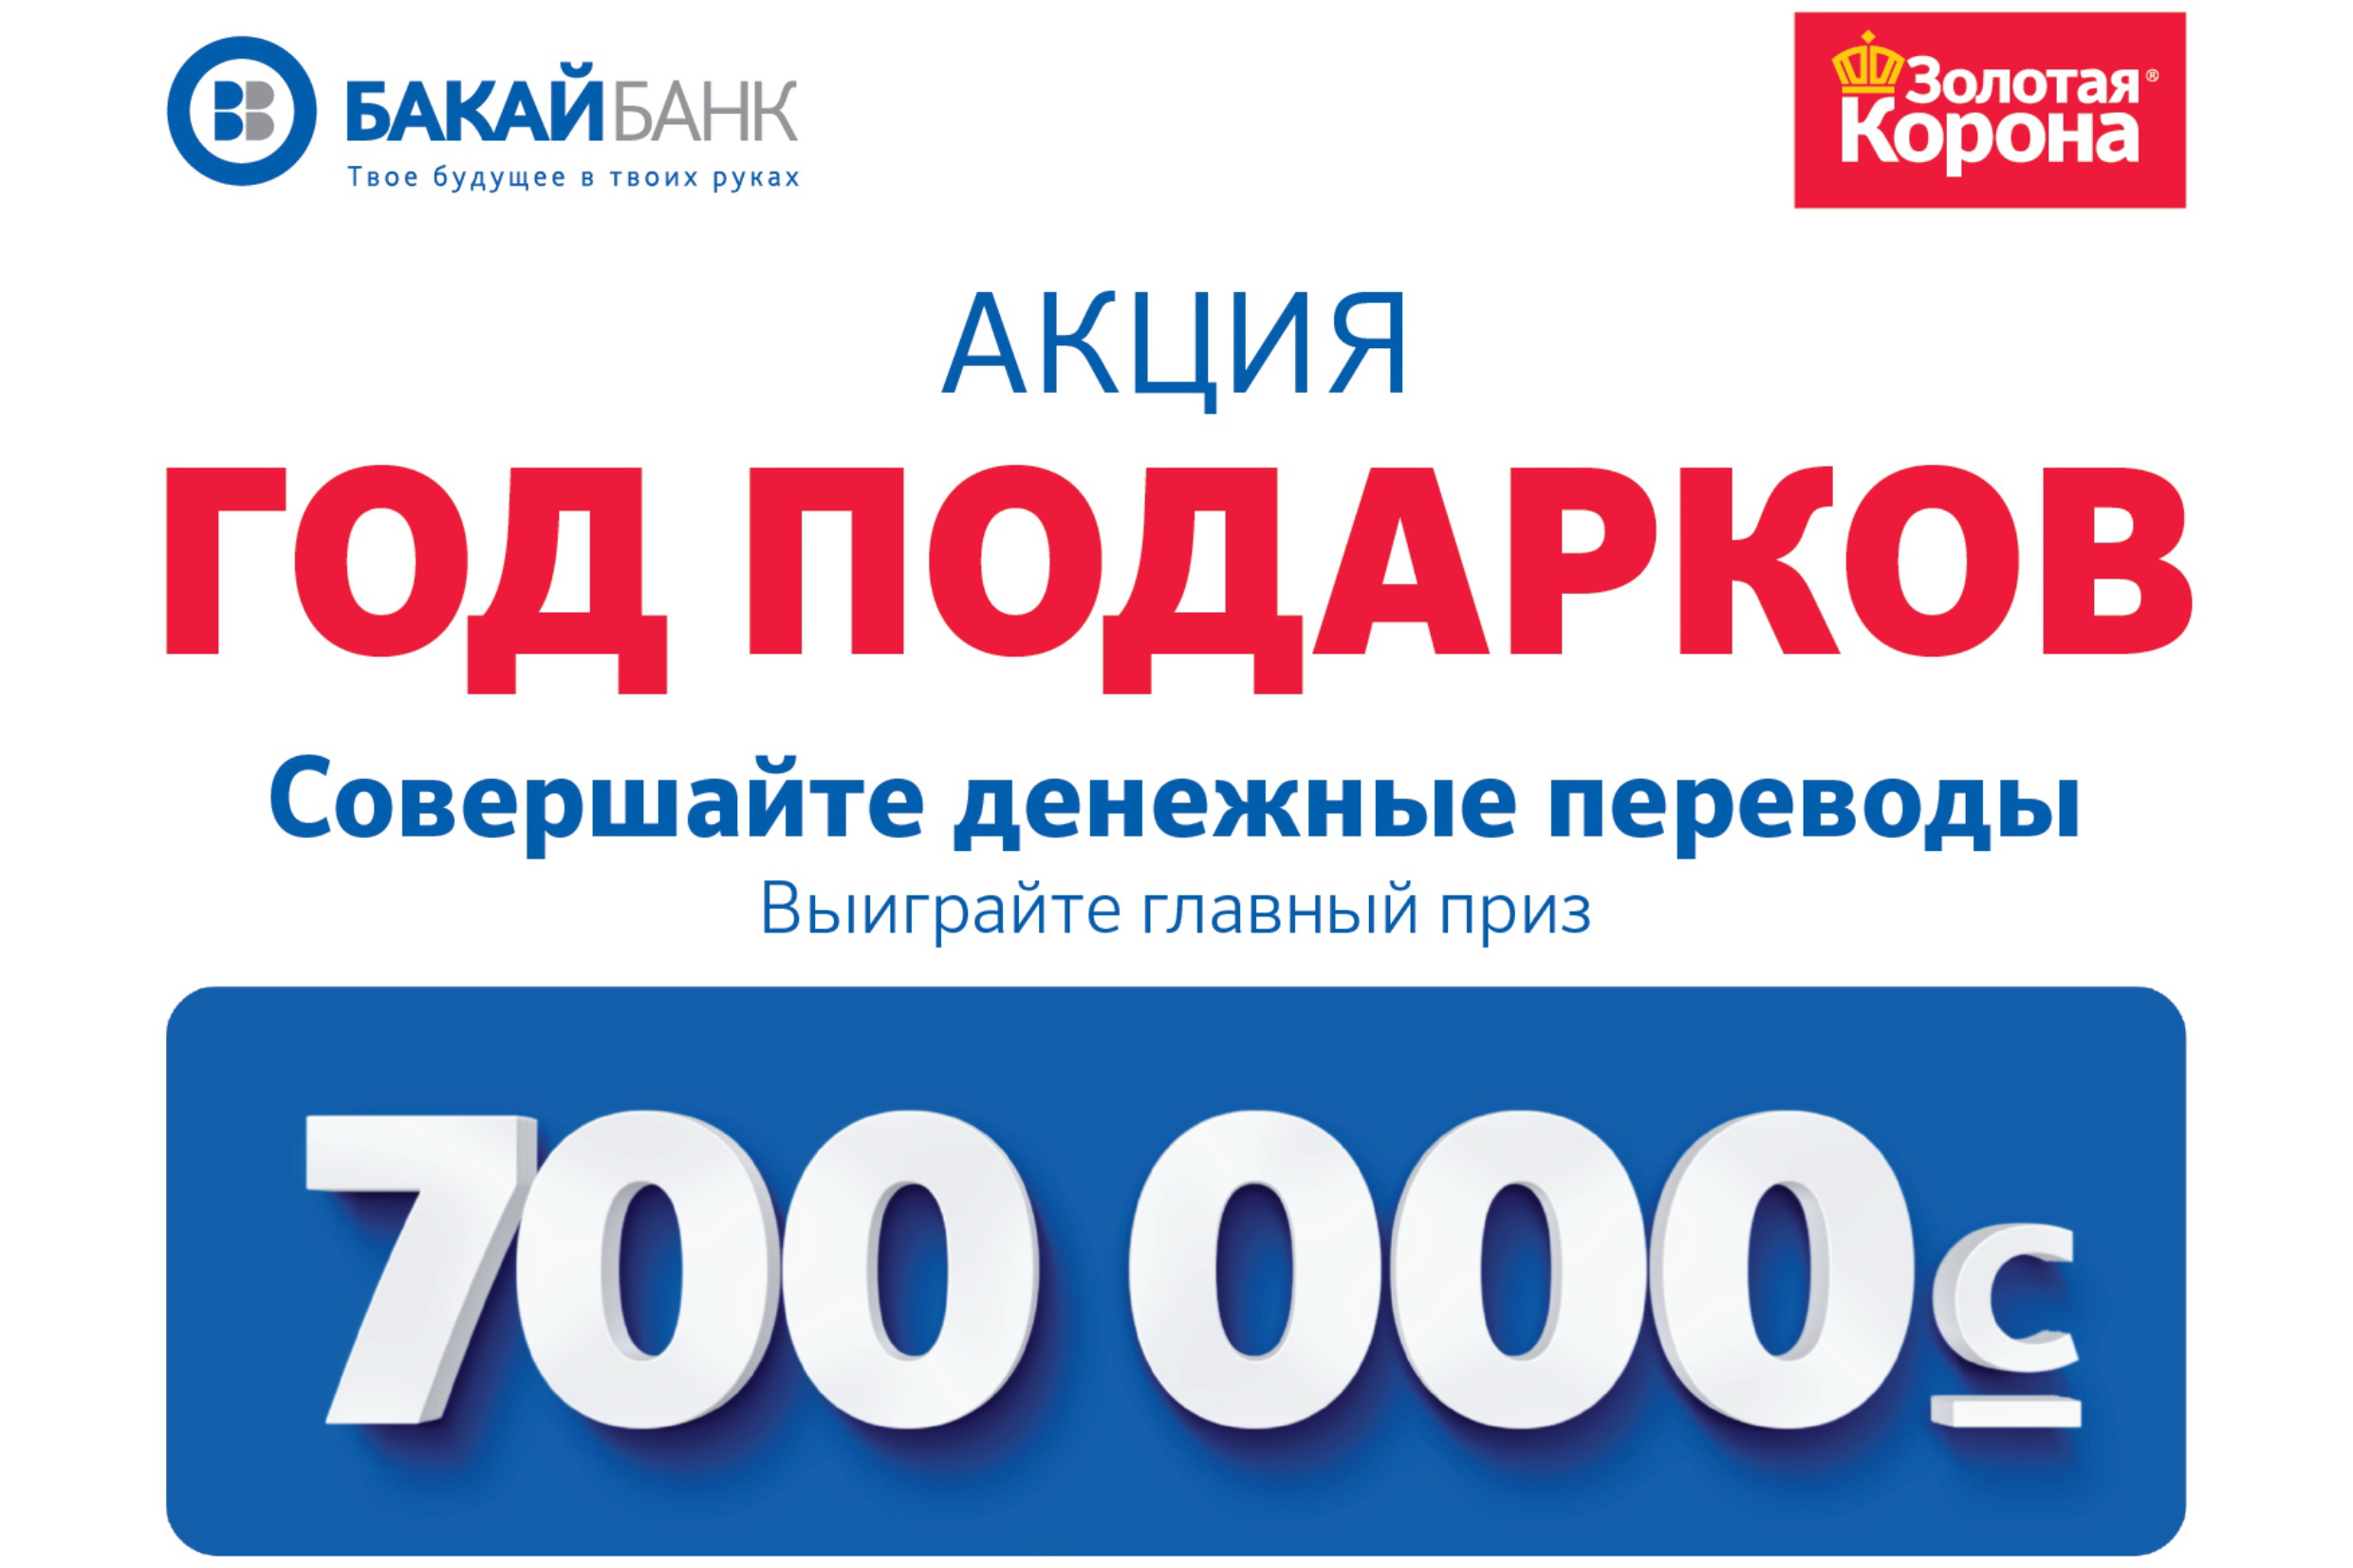 Бакай банк. Бакай банк Бишкек. Бакай банк логотип. Выиграй главный приз.